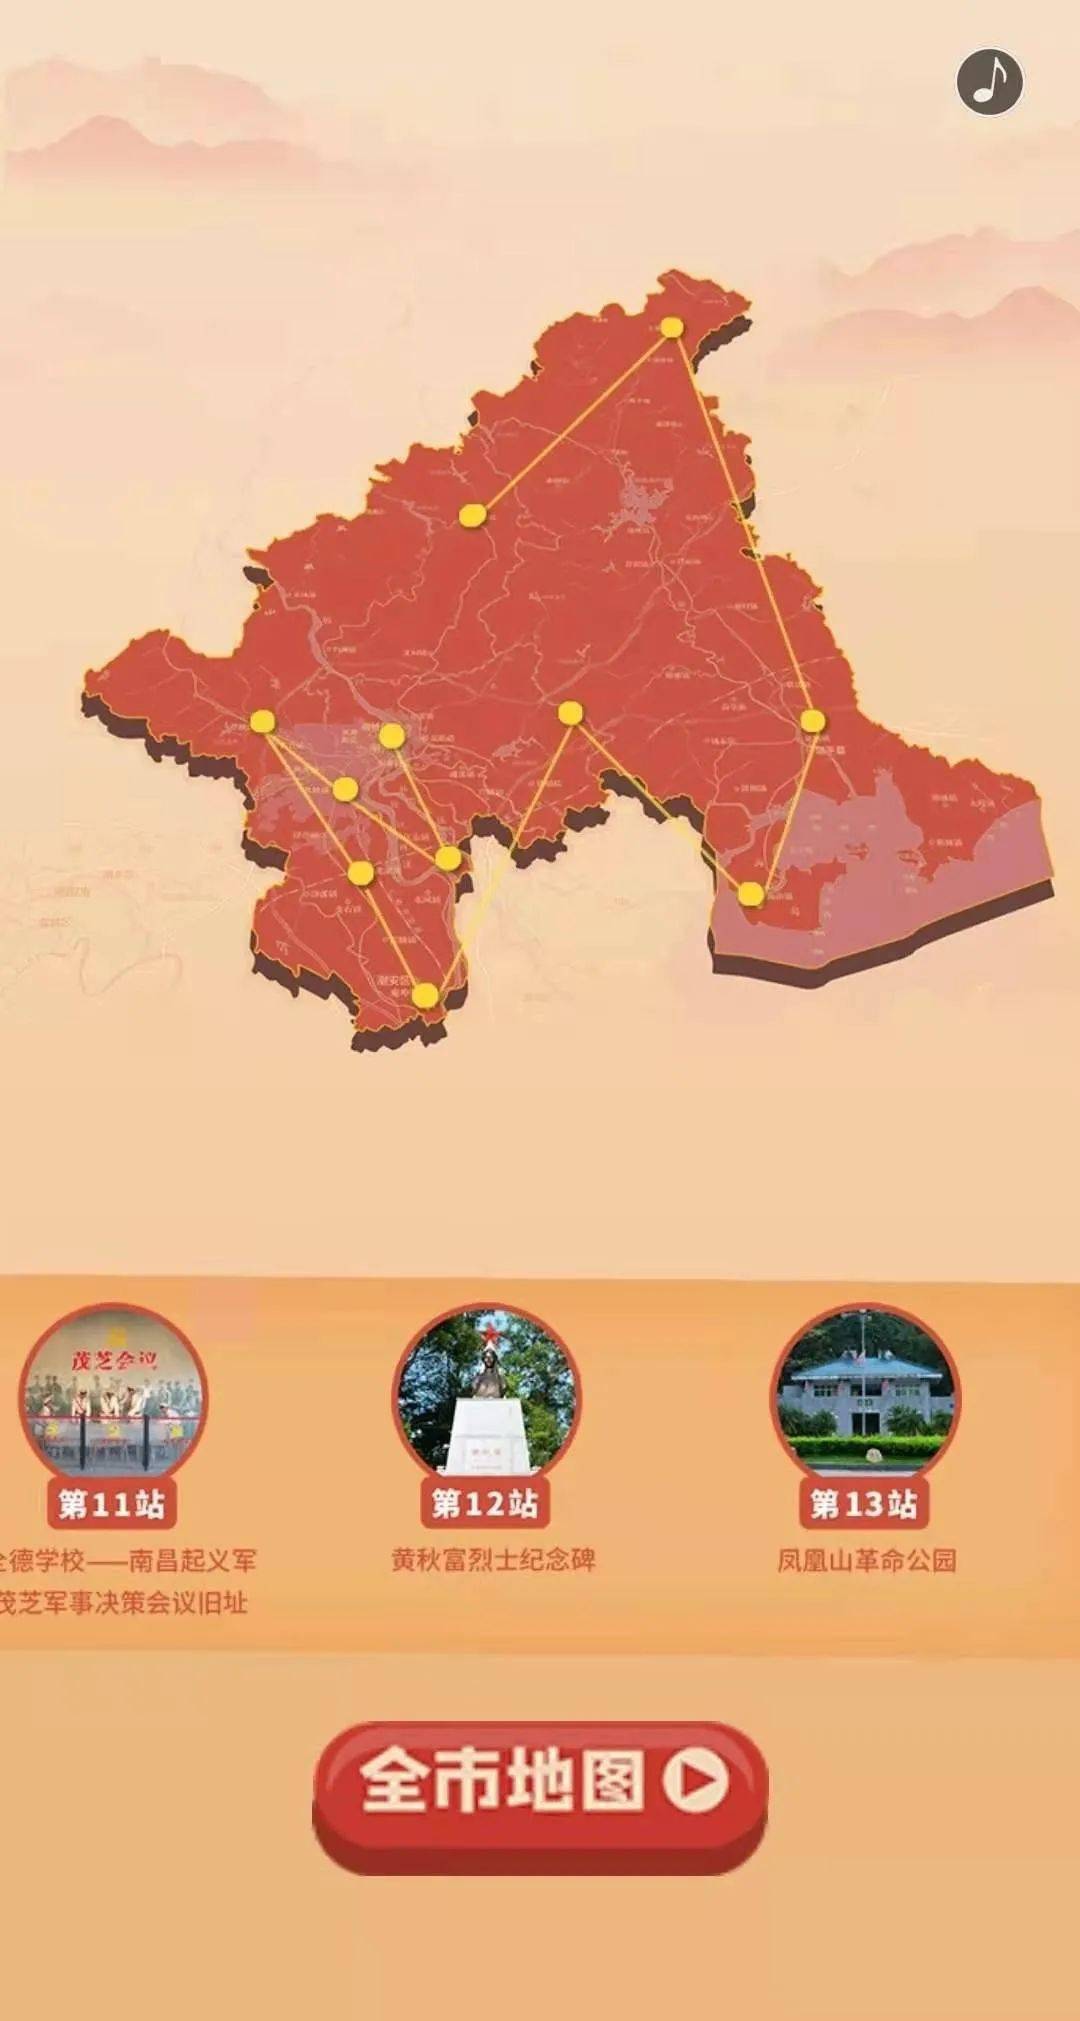 潮州"红色地图"发布!全市150多处红色资源"云打卡"!